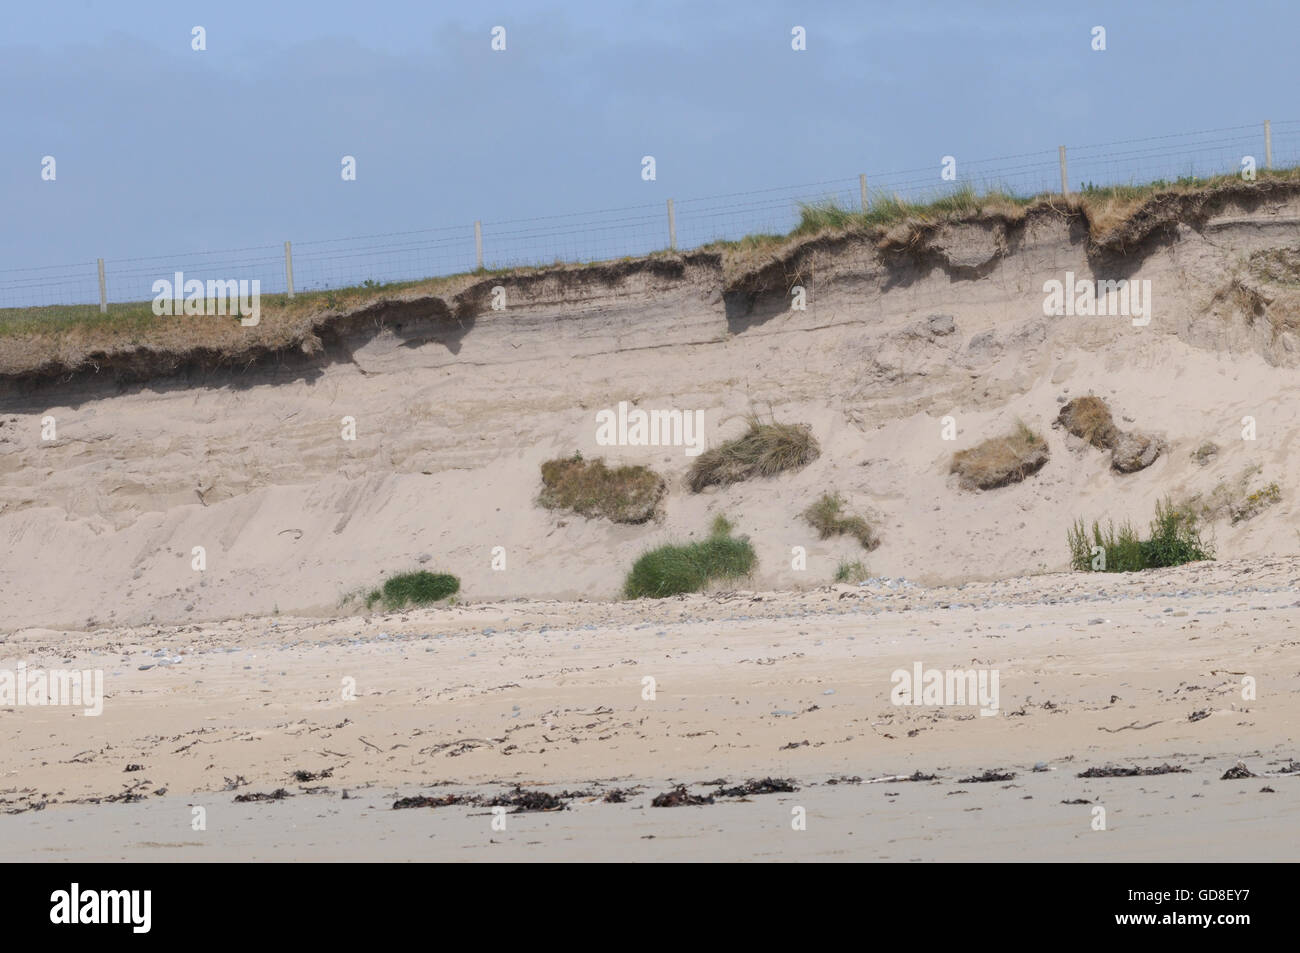 De plus en plus de territoire sur une base de sable s'effondre sur la plage comme le sable est érodé par le vent et la mer. Islay, Hébrides intérieures, Argyll Banque D'Images